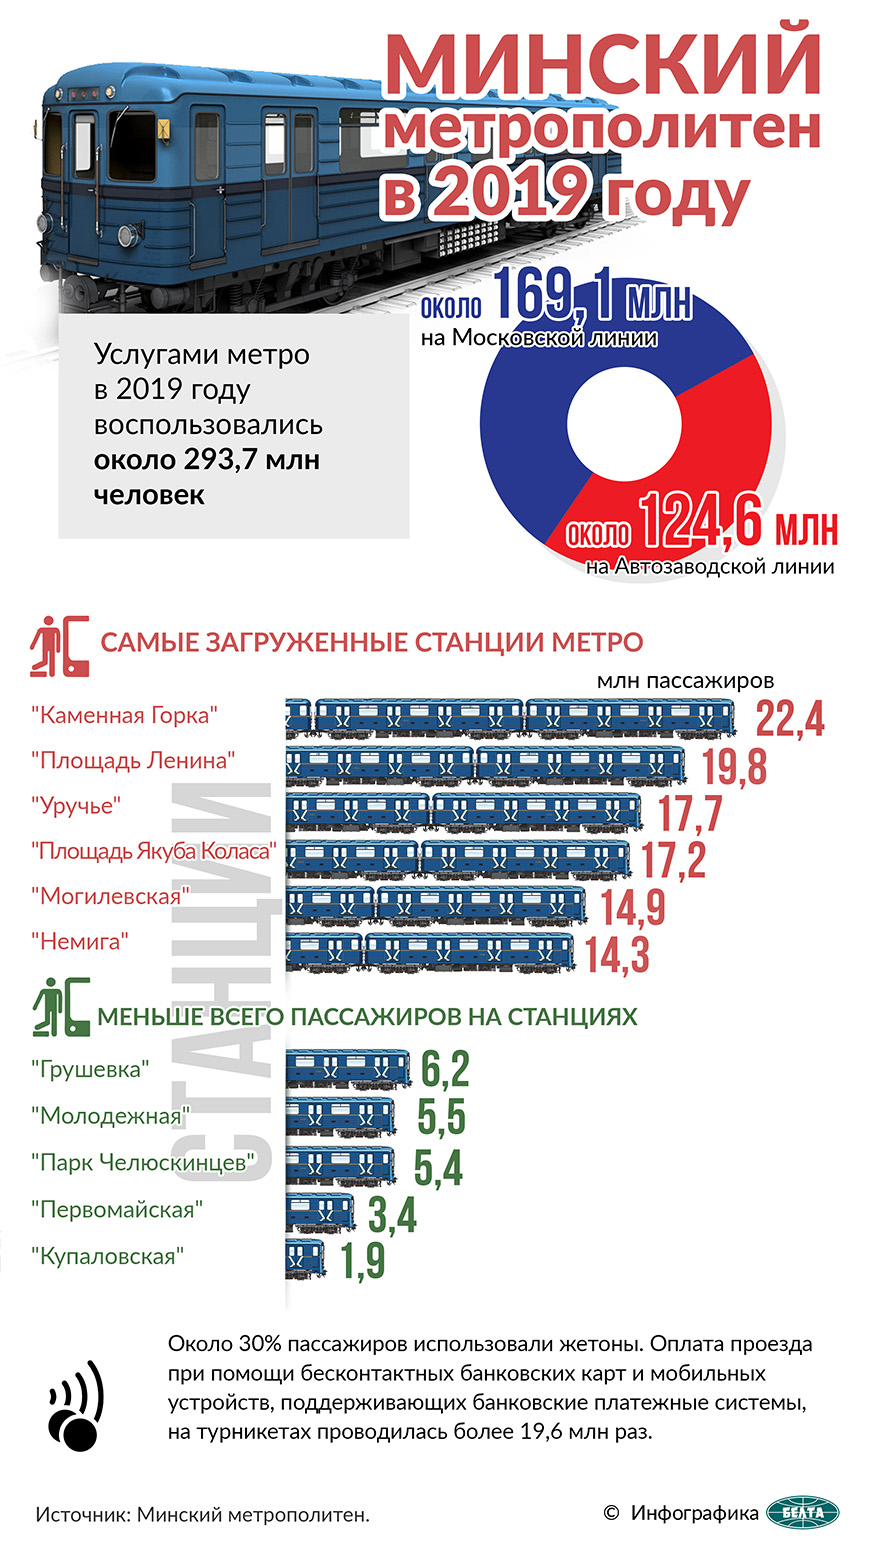 Минский метрополитен в 2019 году